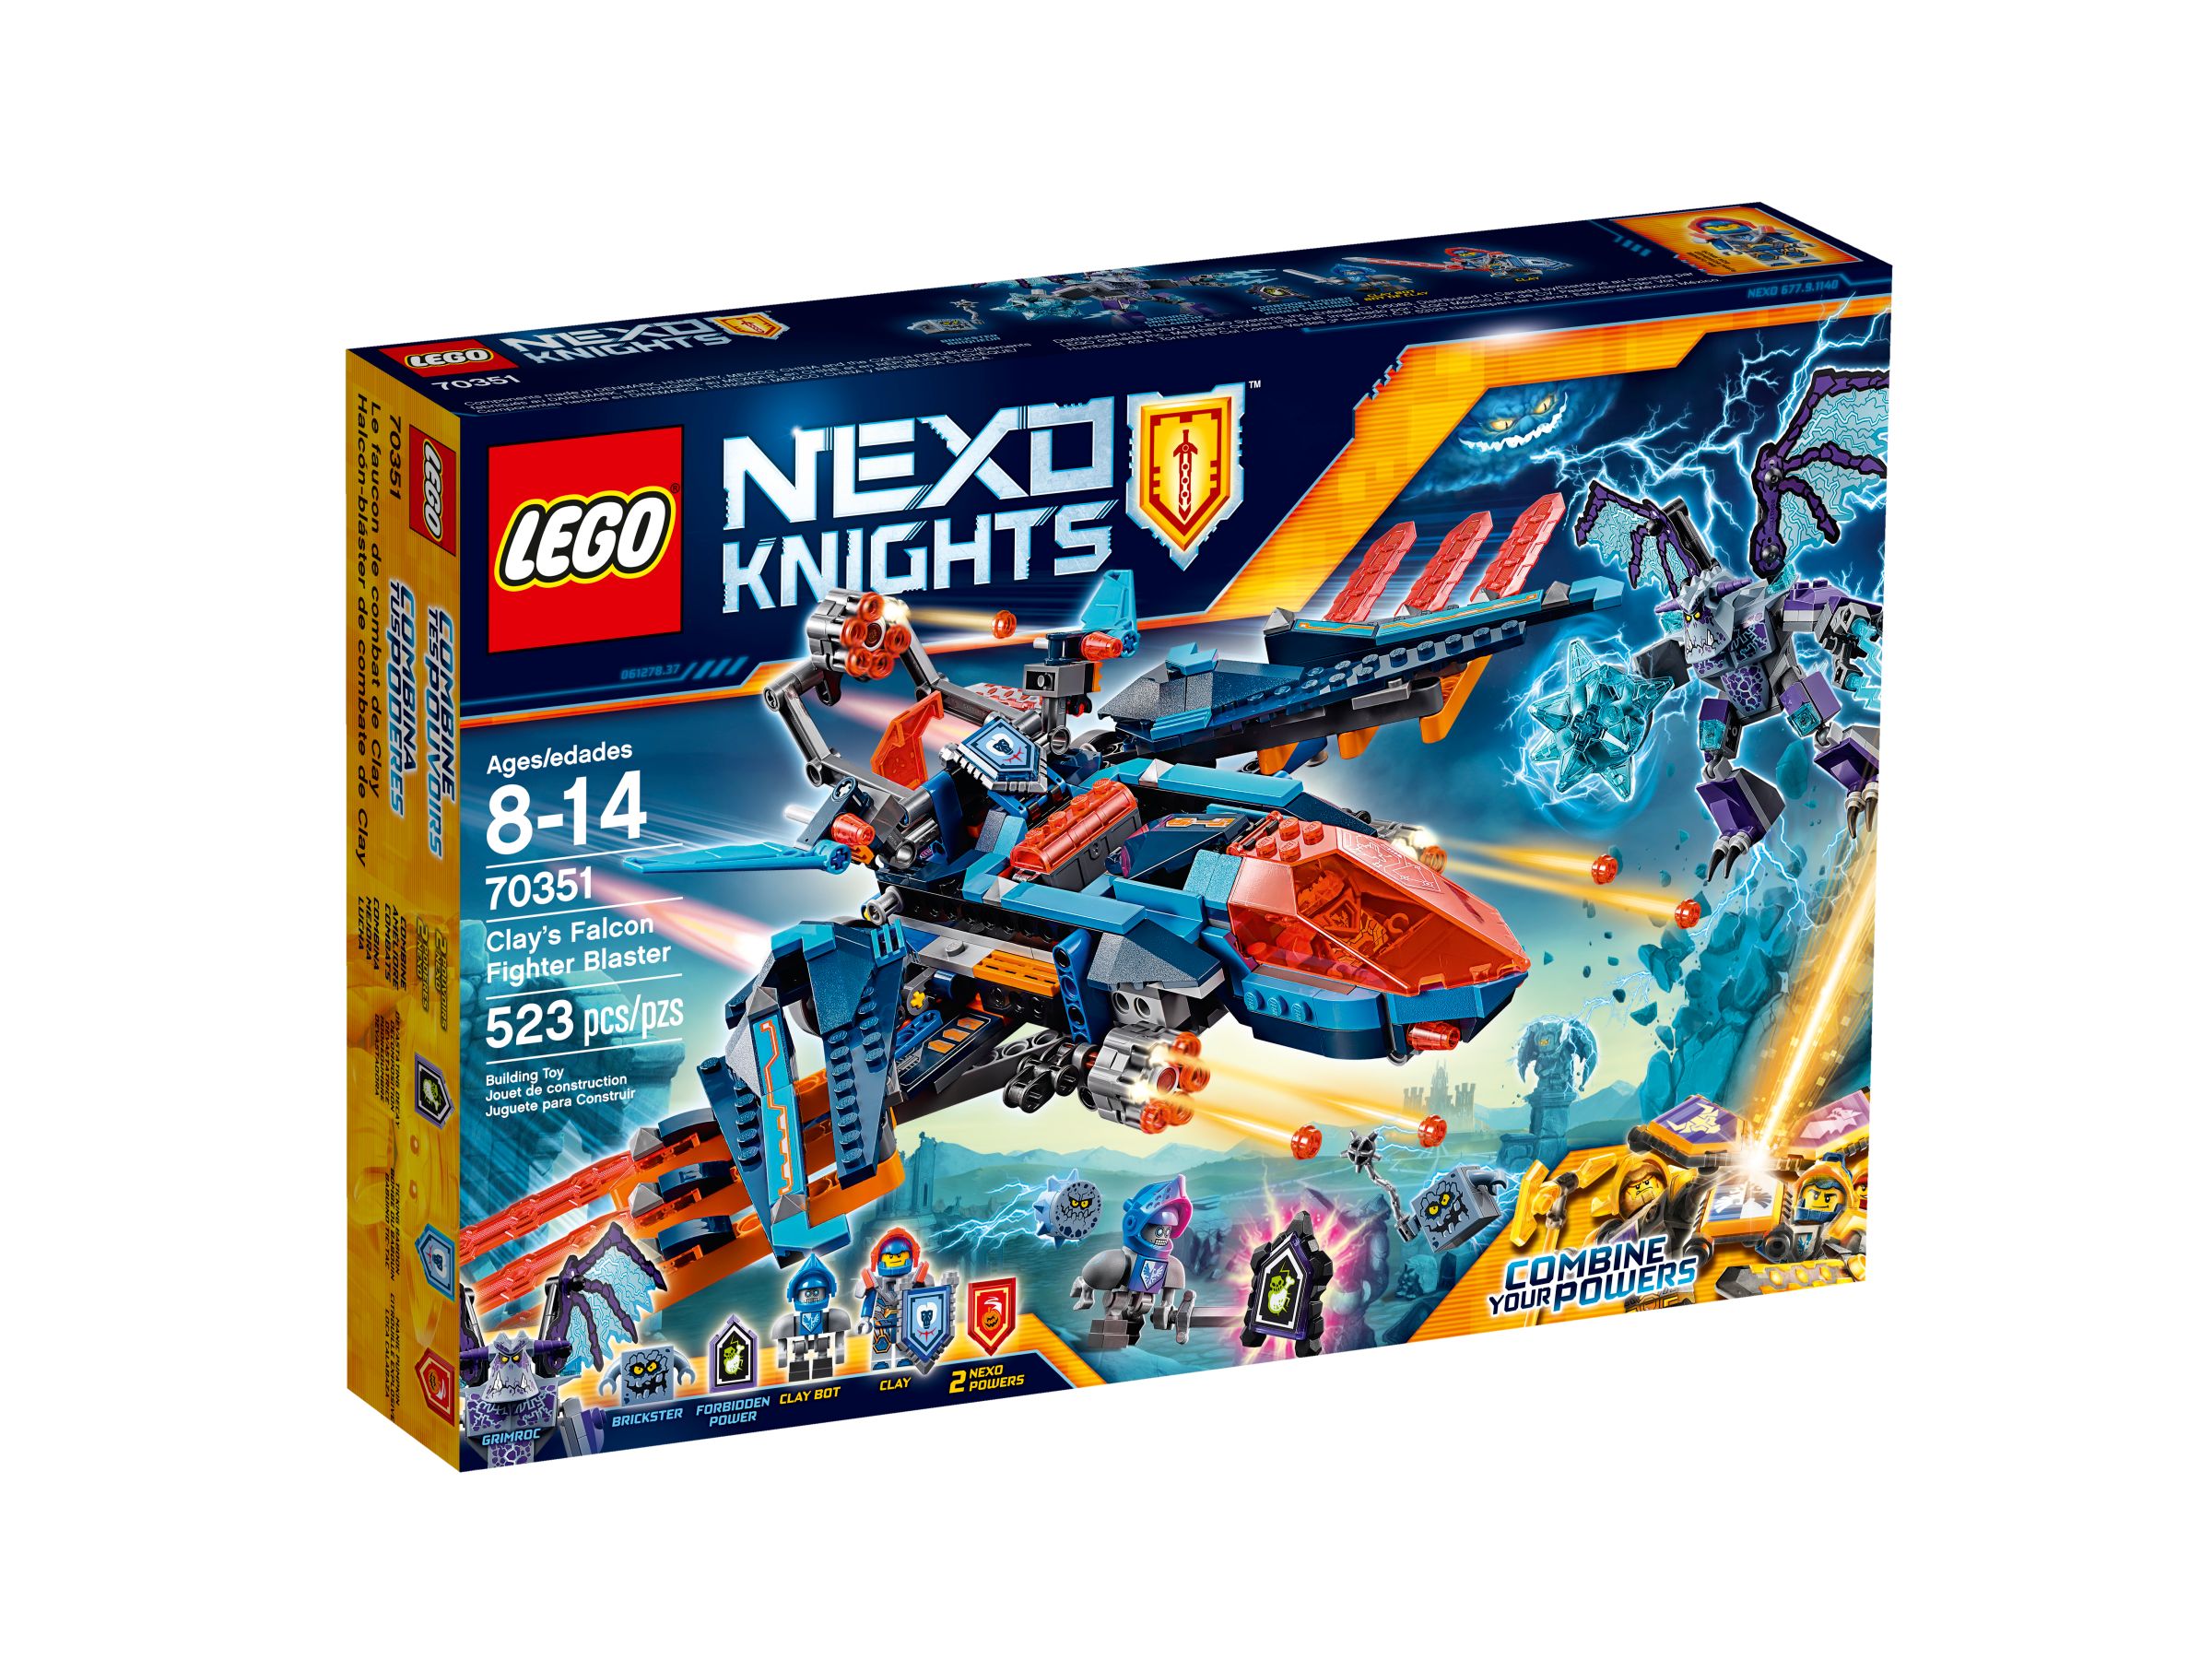 LEGO Nexo Knights 70351 Clays Blaster-Falke LEGO_70351_alt1.jpg